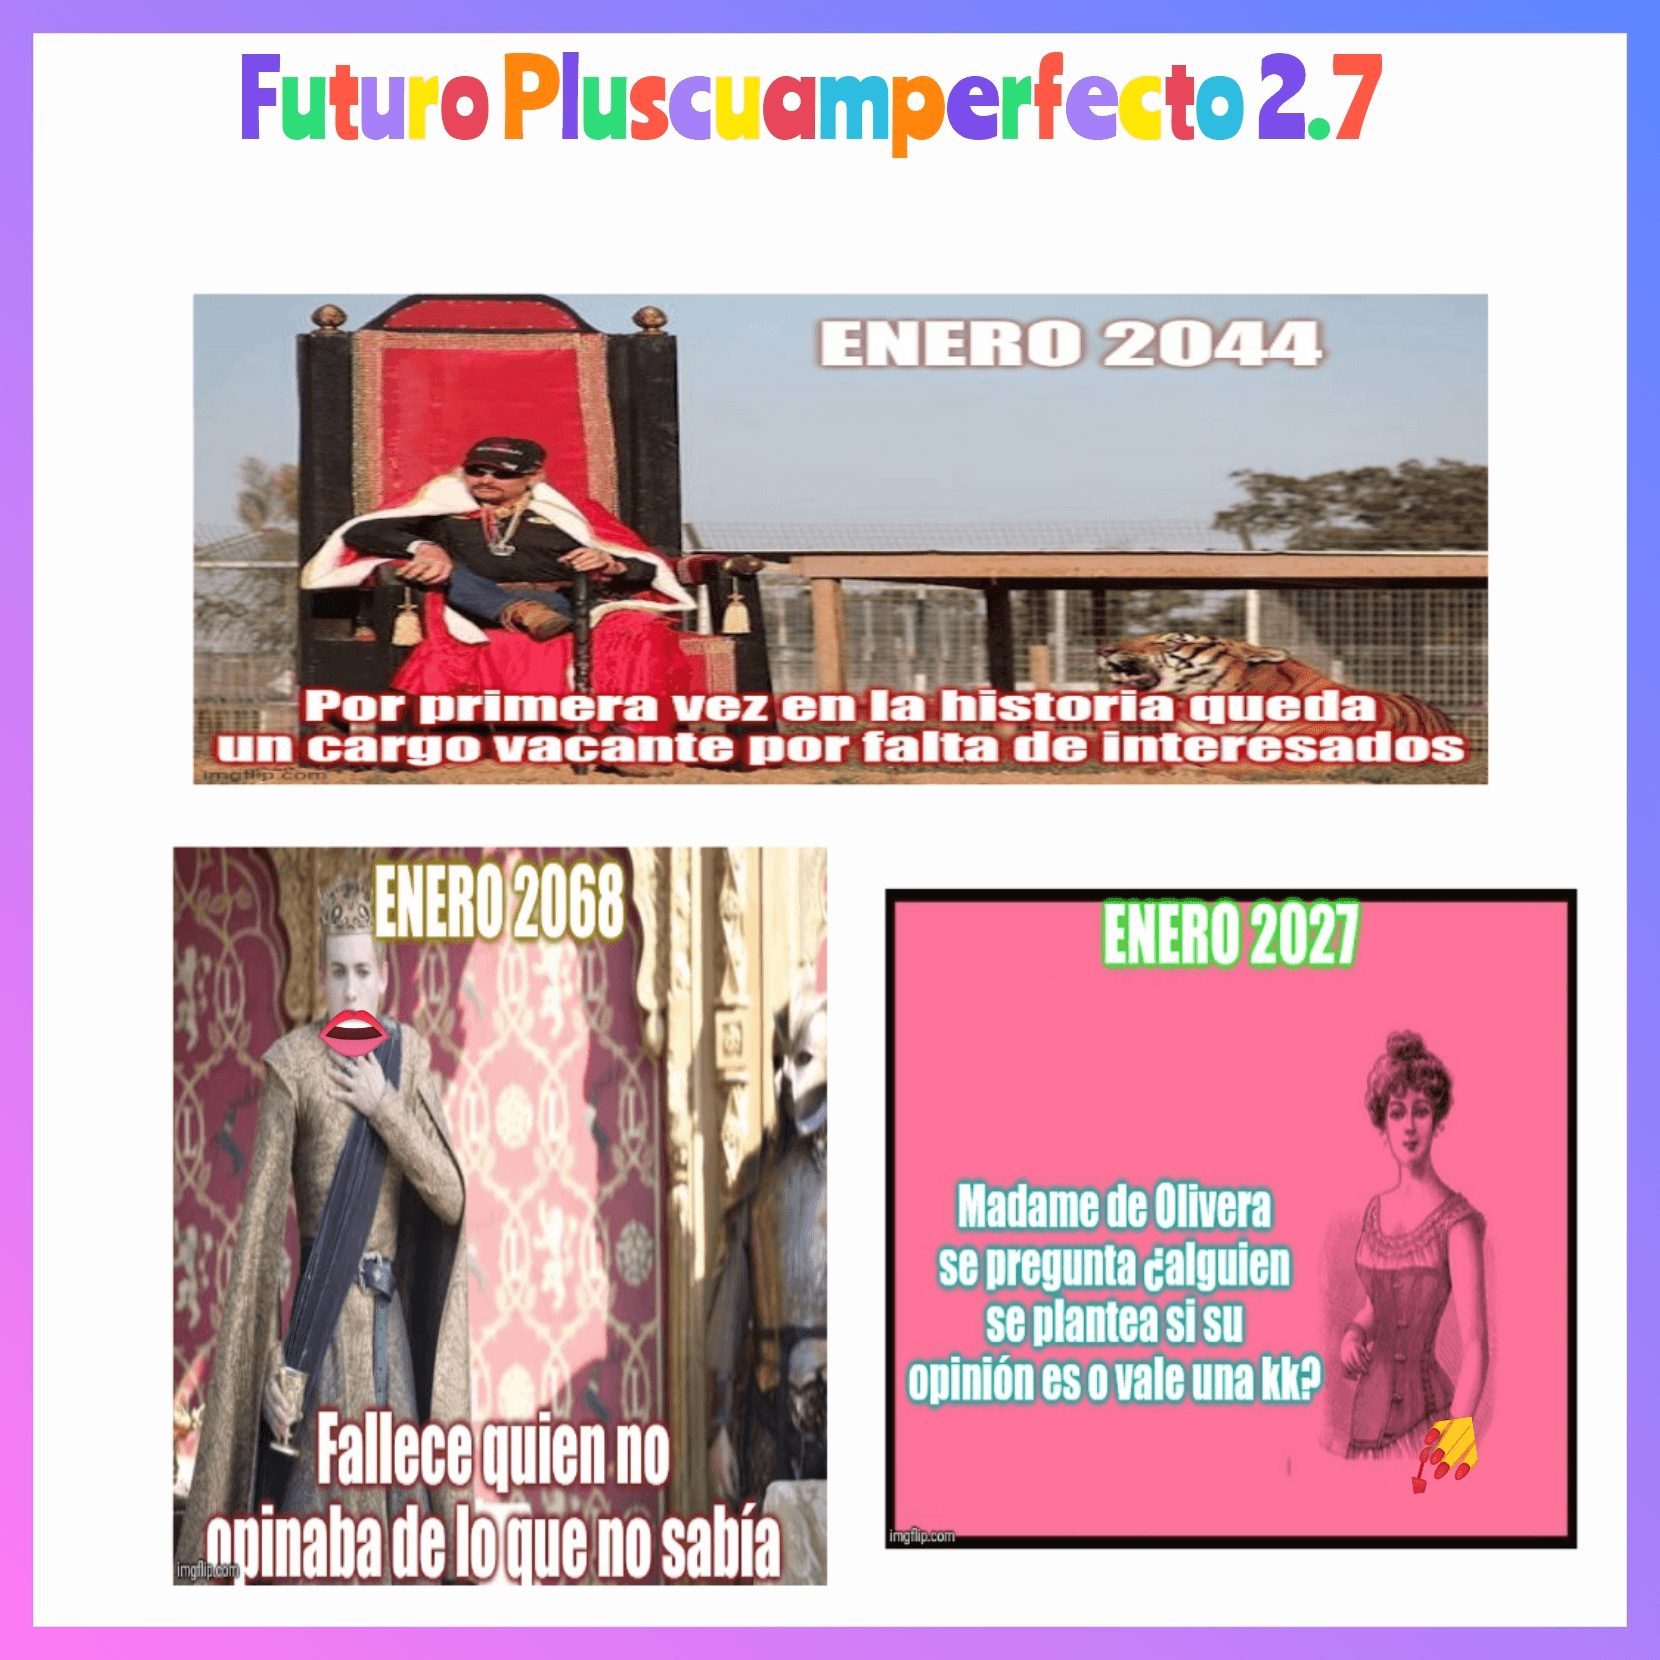 Futuro Pluscuamperfecto 2.7